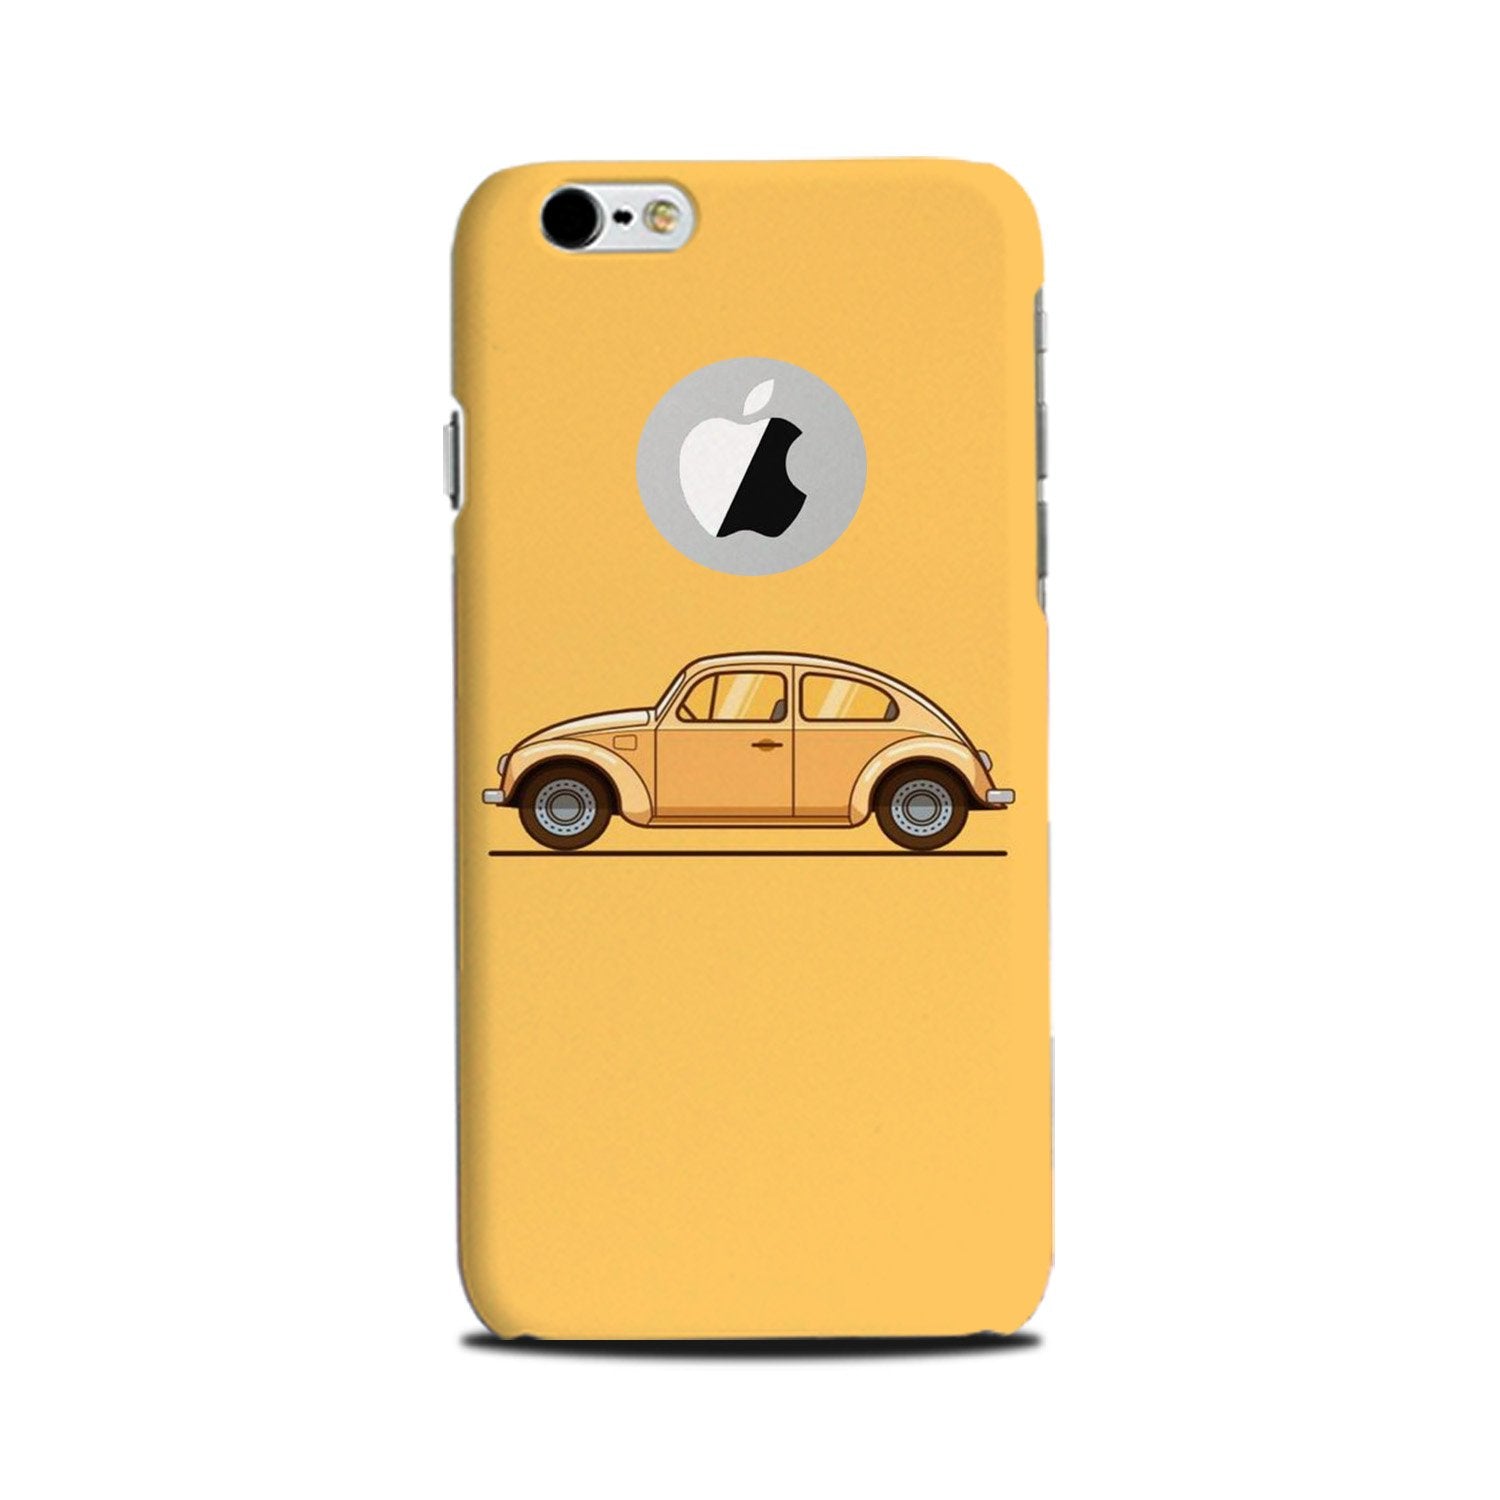 Vintage Car Case for iPhone 6 Plus / 6s Plus logo cut(Design No. 262)